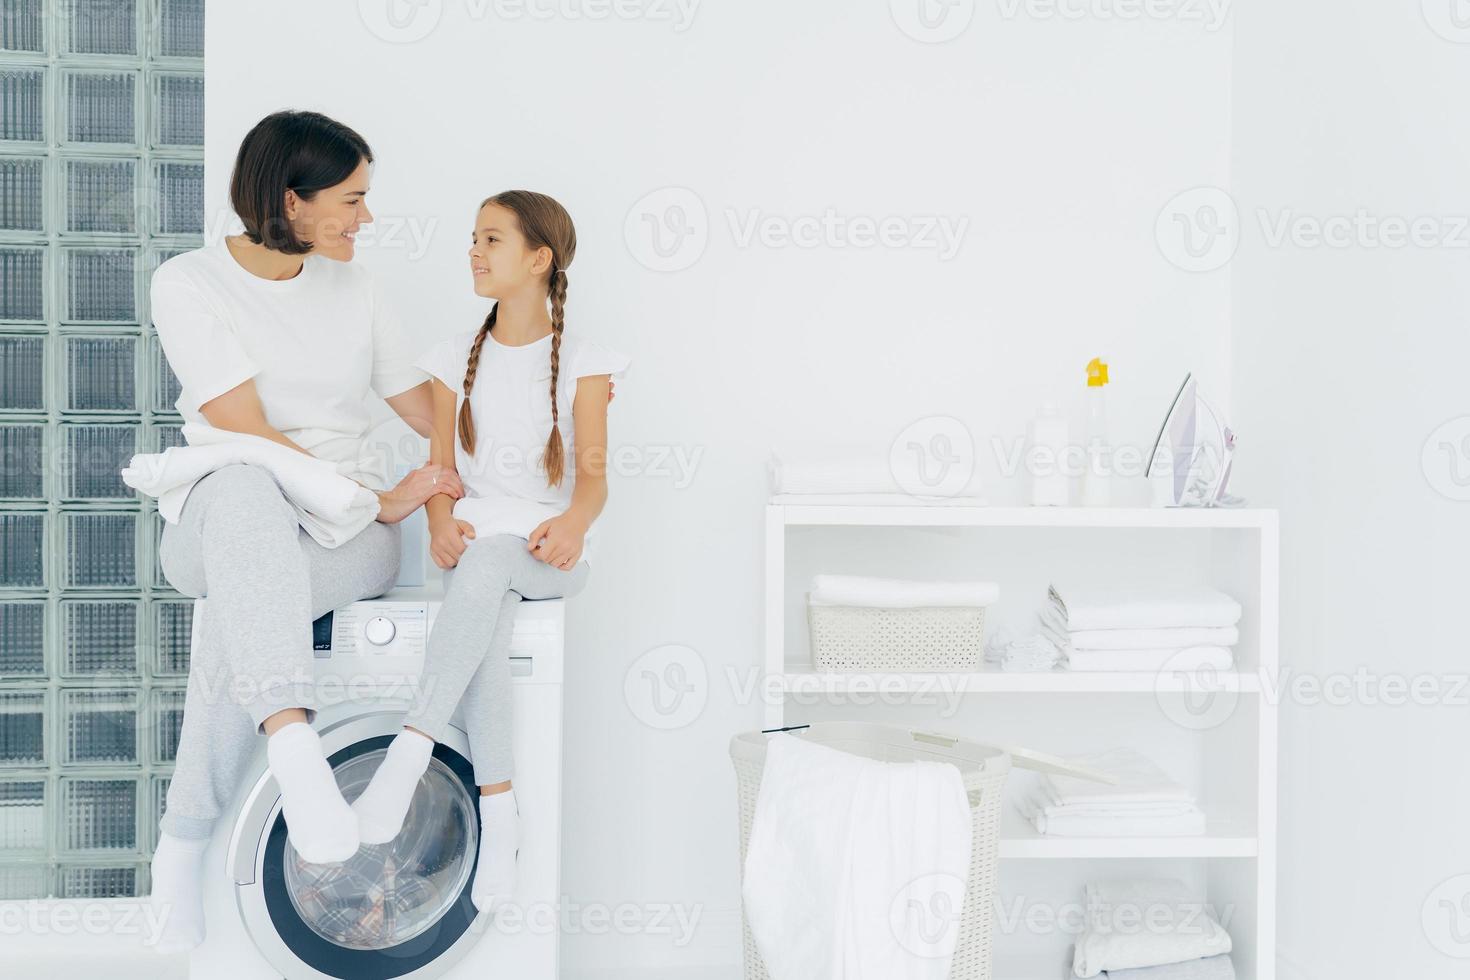 la madre premurosa parla con la figlia, posa sulla lavatrice, circondata da lenzuola bianche, lava insieme, stando in lavanderia a casa. la casalinga adulta felice ringrazia la ragazza adorabile per l'aiuto foto